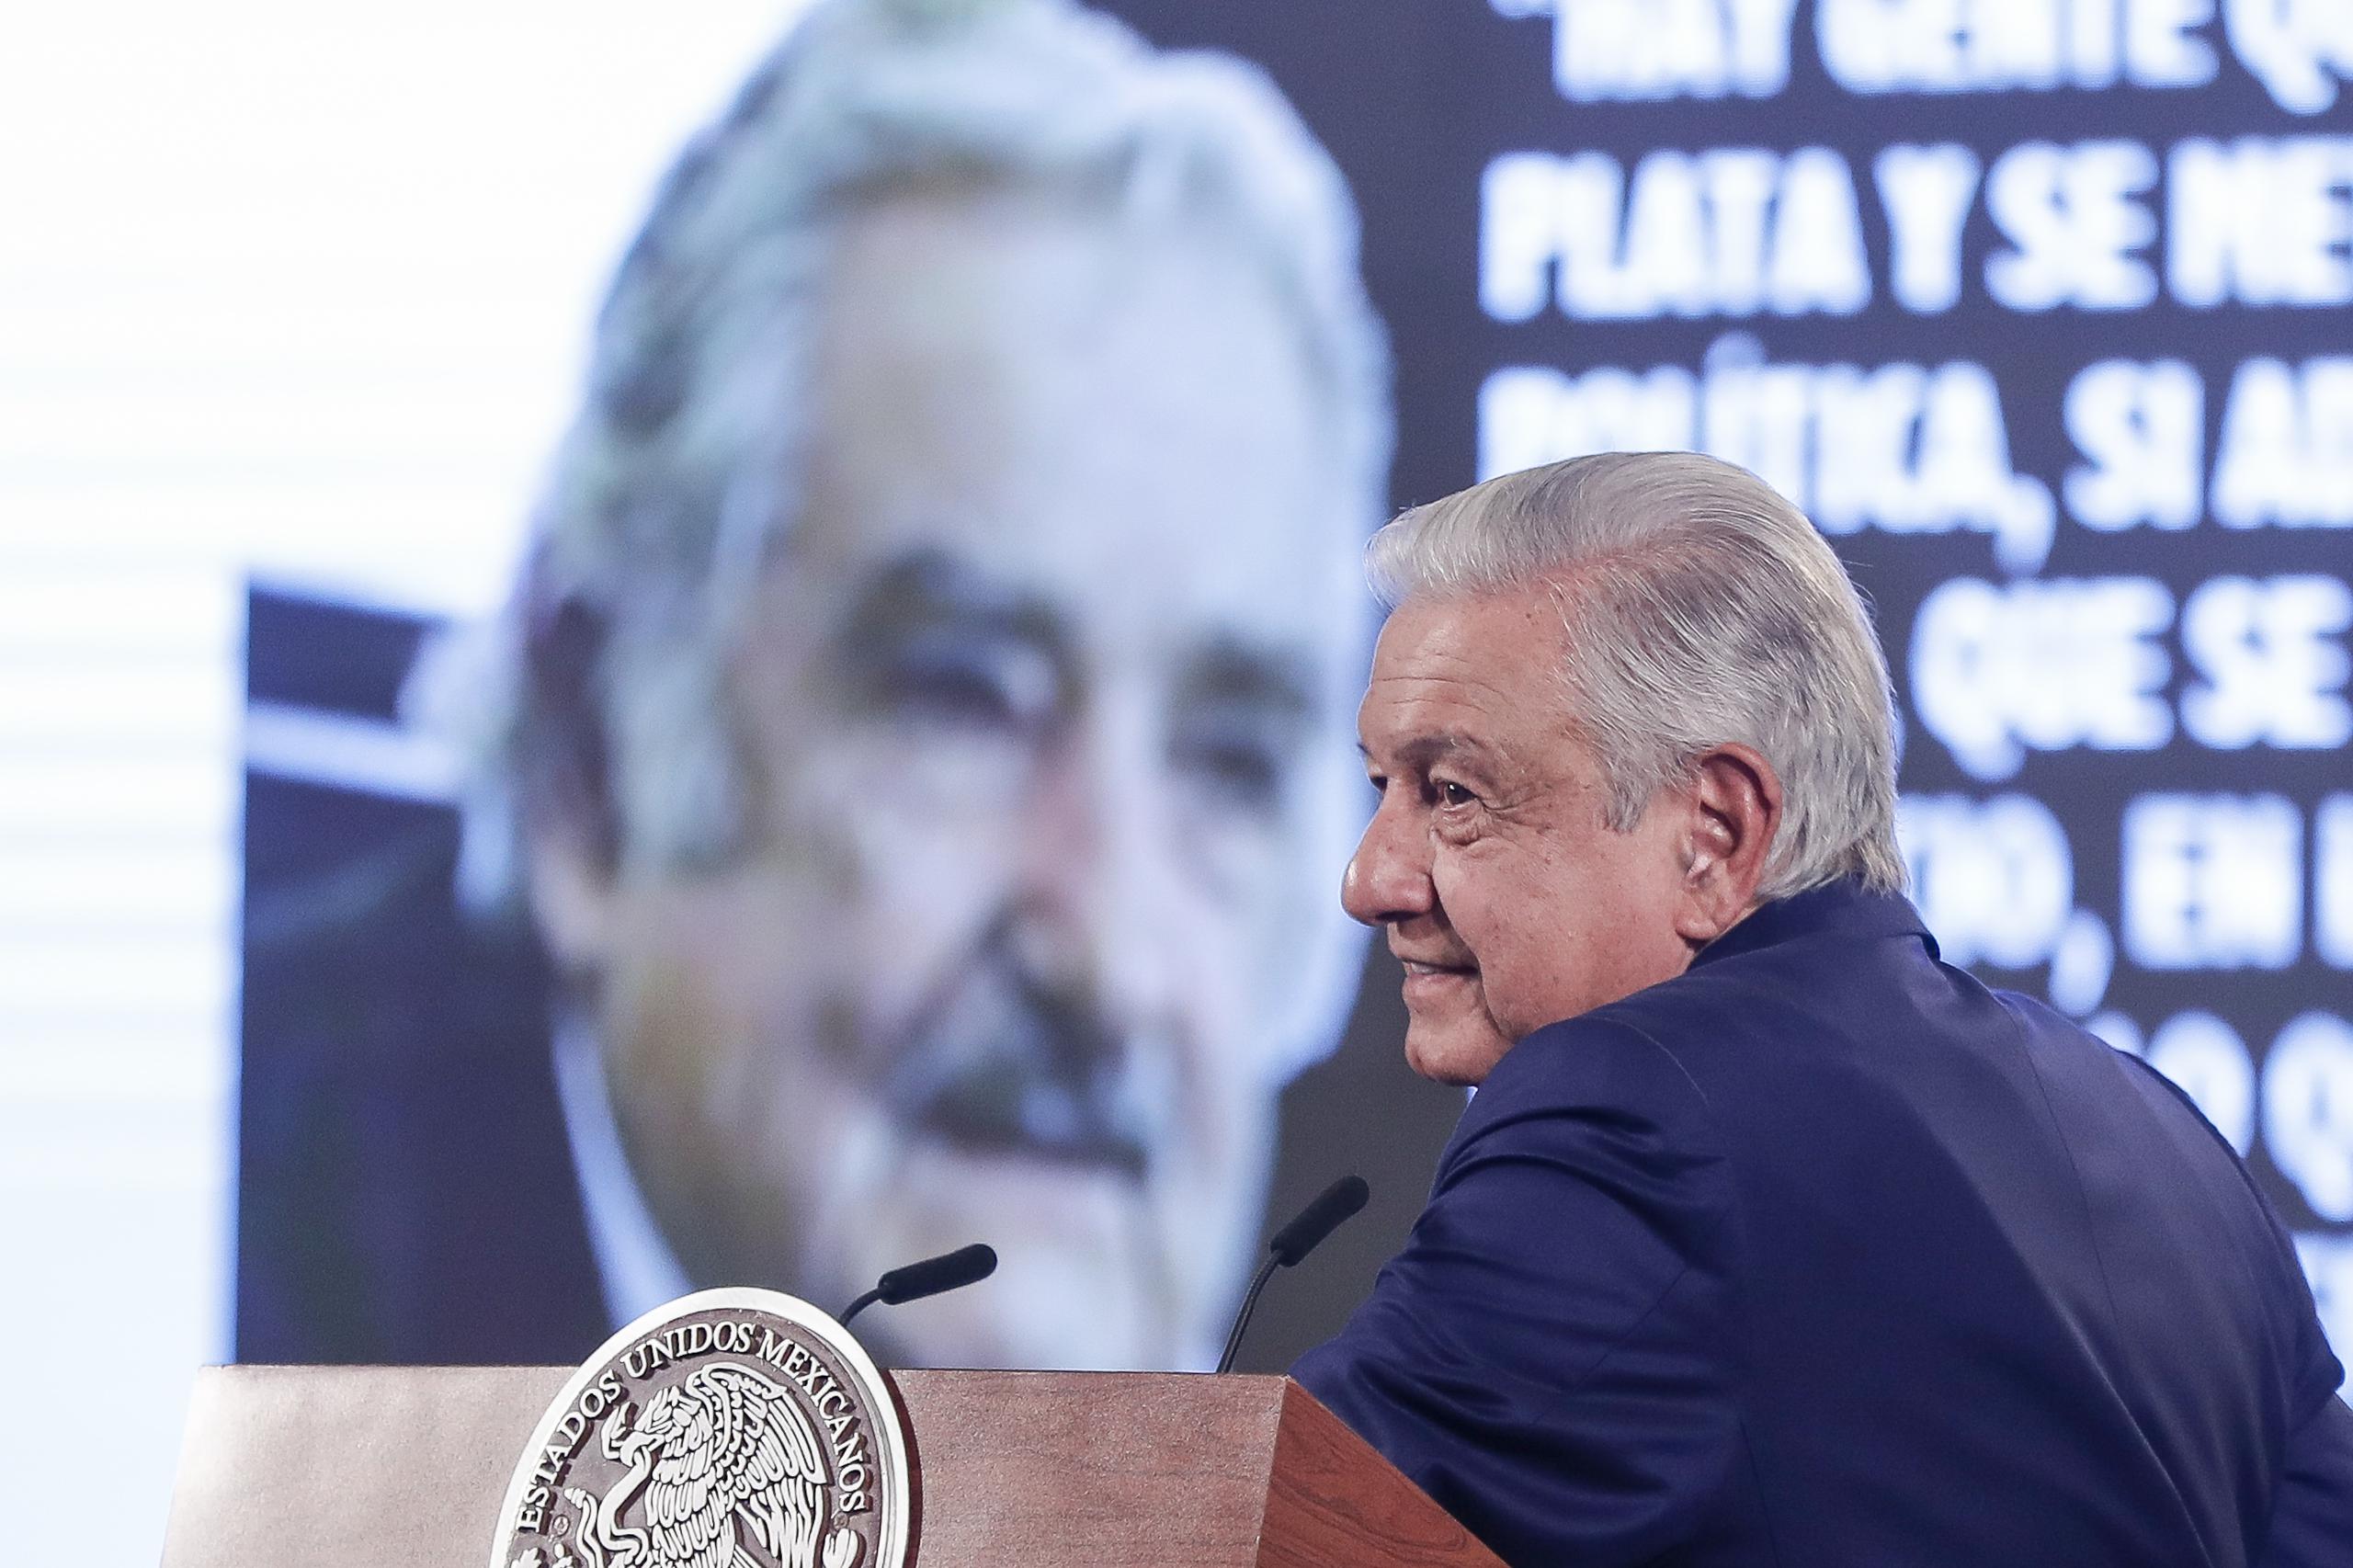 López Obrador hizo referencia a declaraciones de Mujica, mientras hablaba en su rueda de prensa diaria, de cómo las personas que ambicionan dinero deben permanecer fuera de la política.